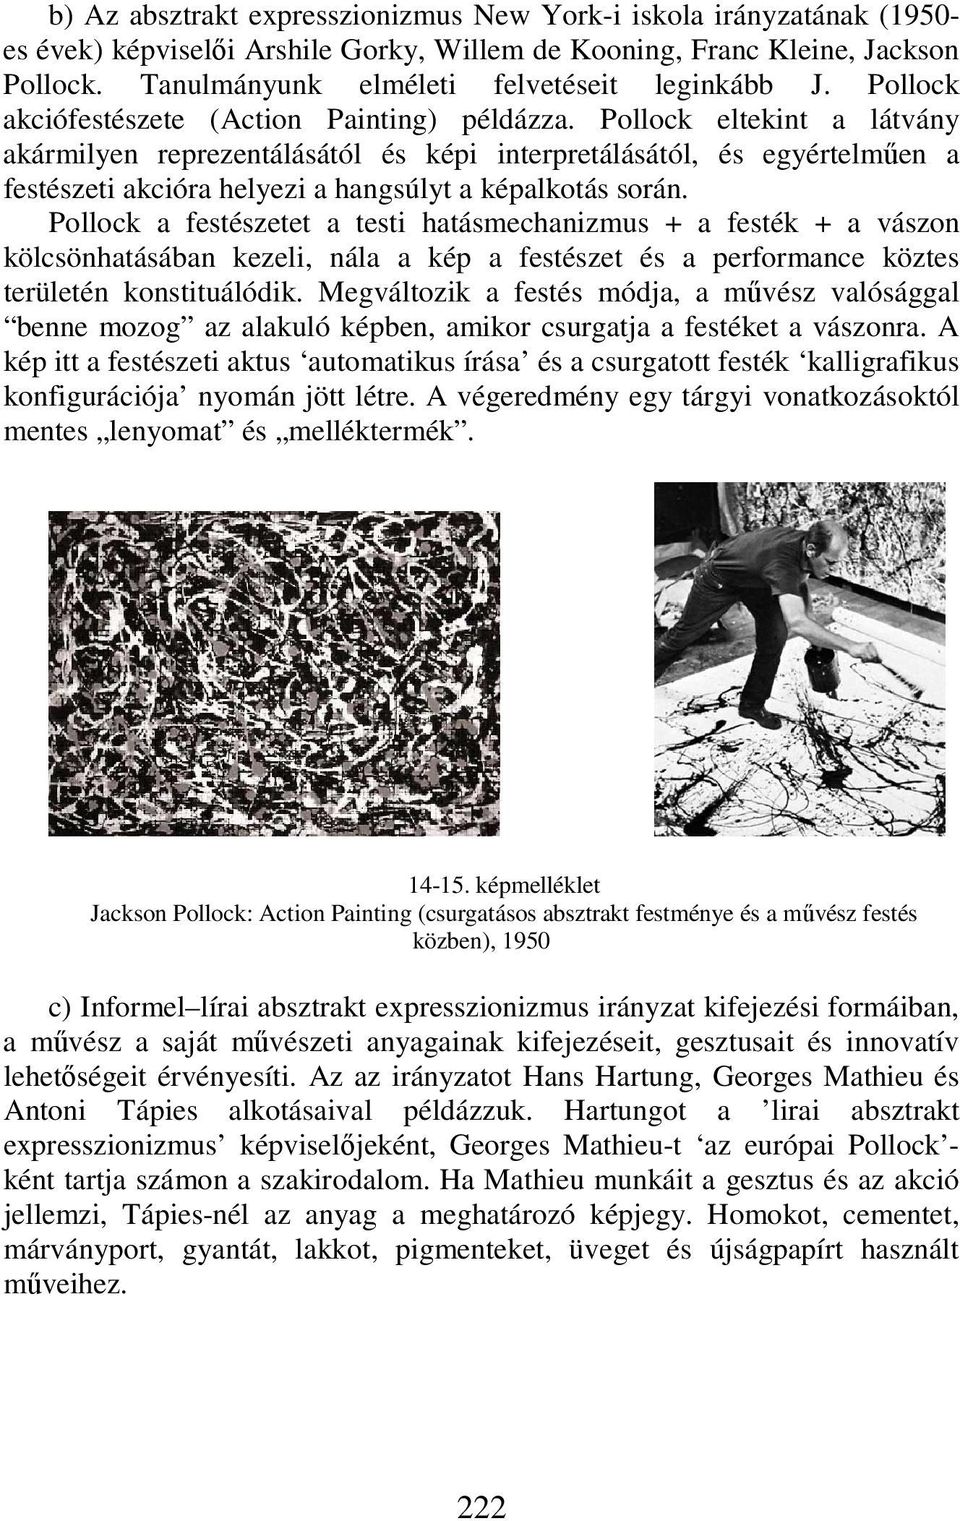 Pollock eltekint a látvány akármilyen reprezentálásától és képi interpretálásától, és egyértelműen a festészeti akcióra helyezi a hangsúlyt a képalkotás során.